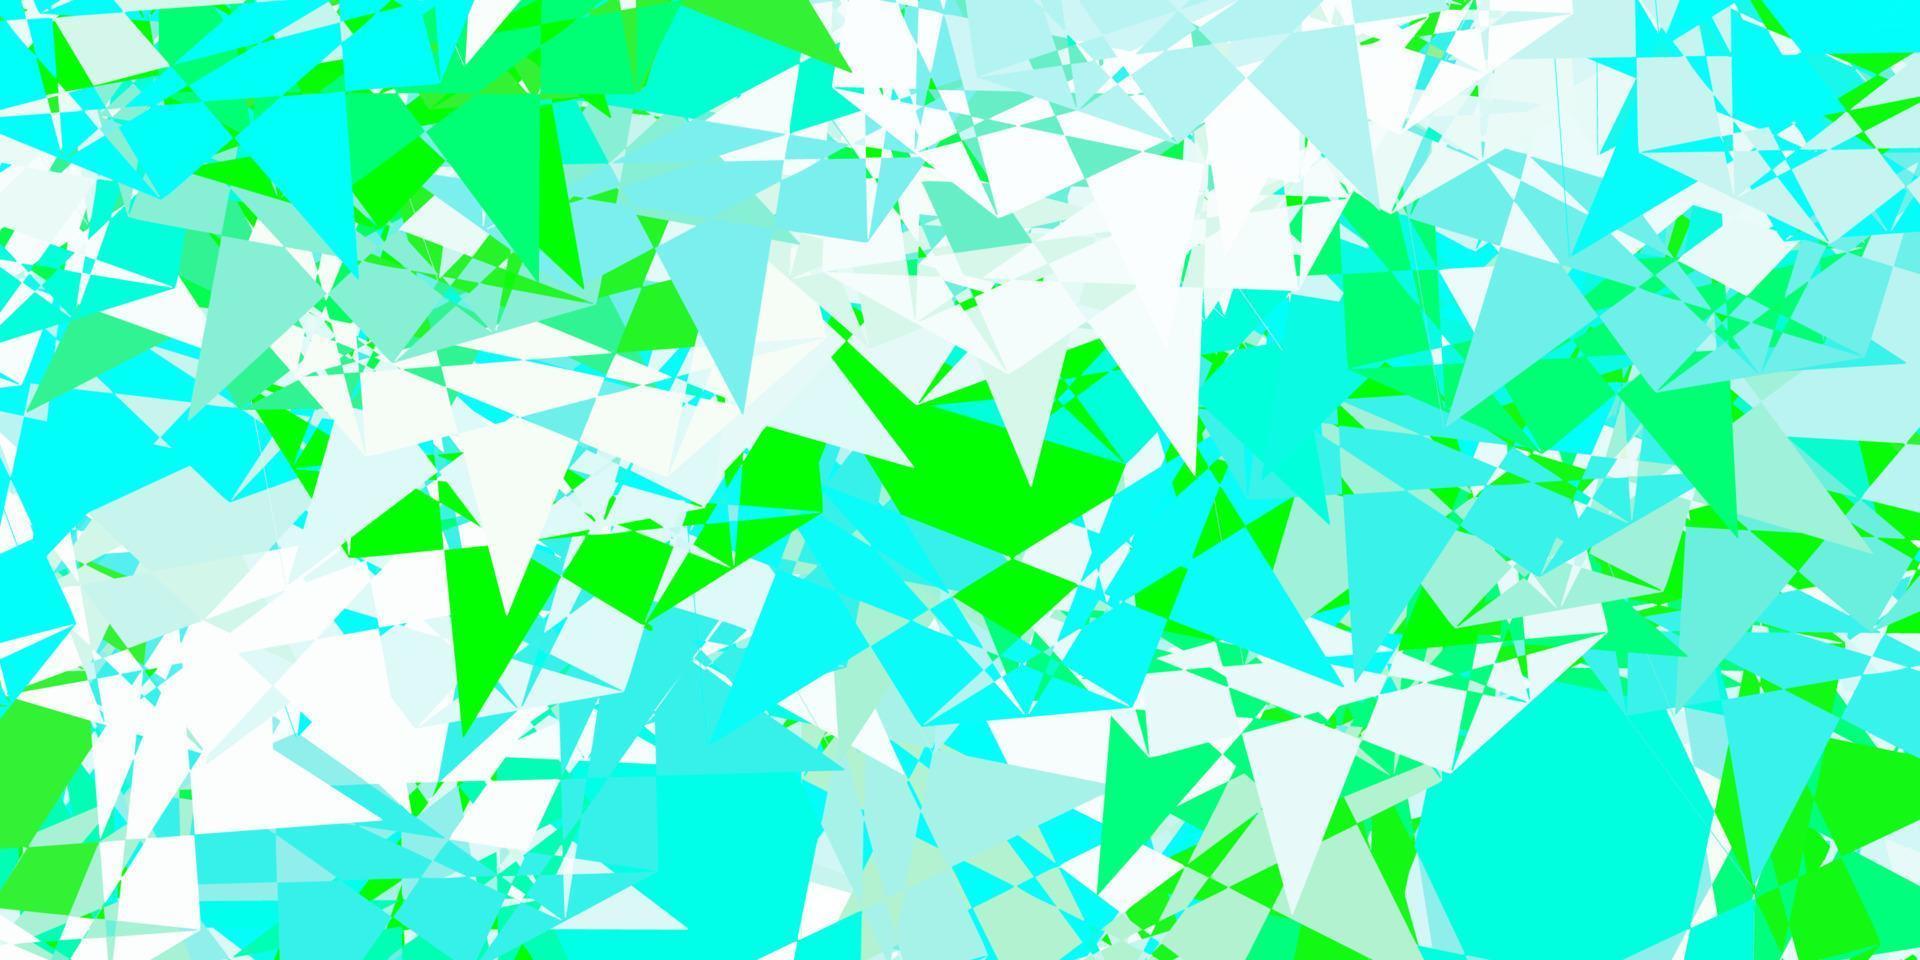 sfondo vettoriale verde chiaro con triangoli, linee.